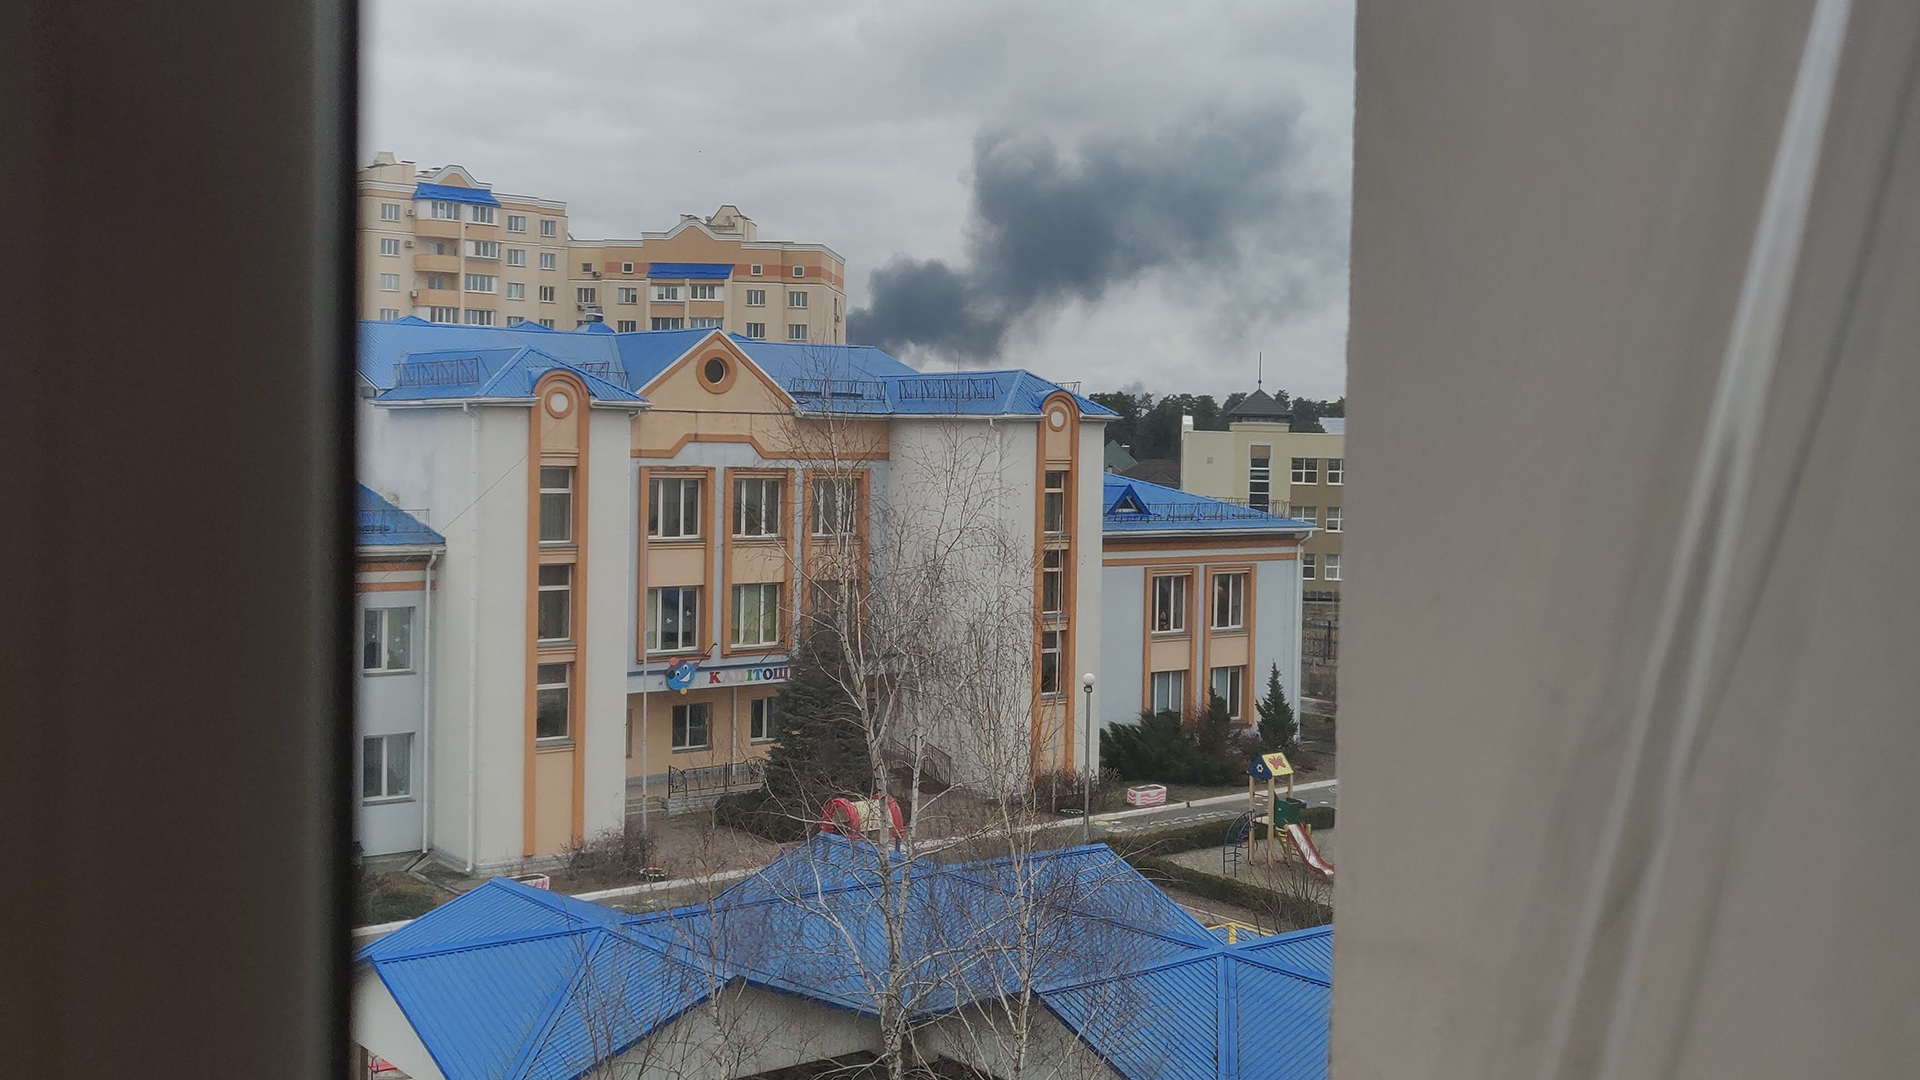 Photo à travers la fenêtre de Nikita surplombant le bombardement de l'aéroport de Hostomel.